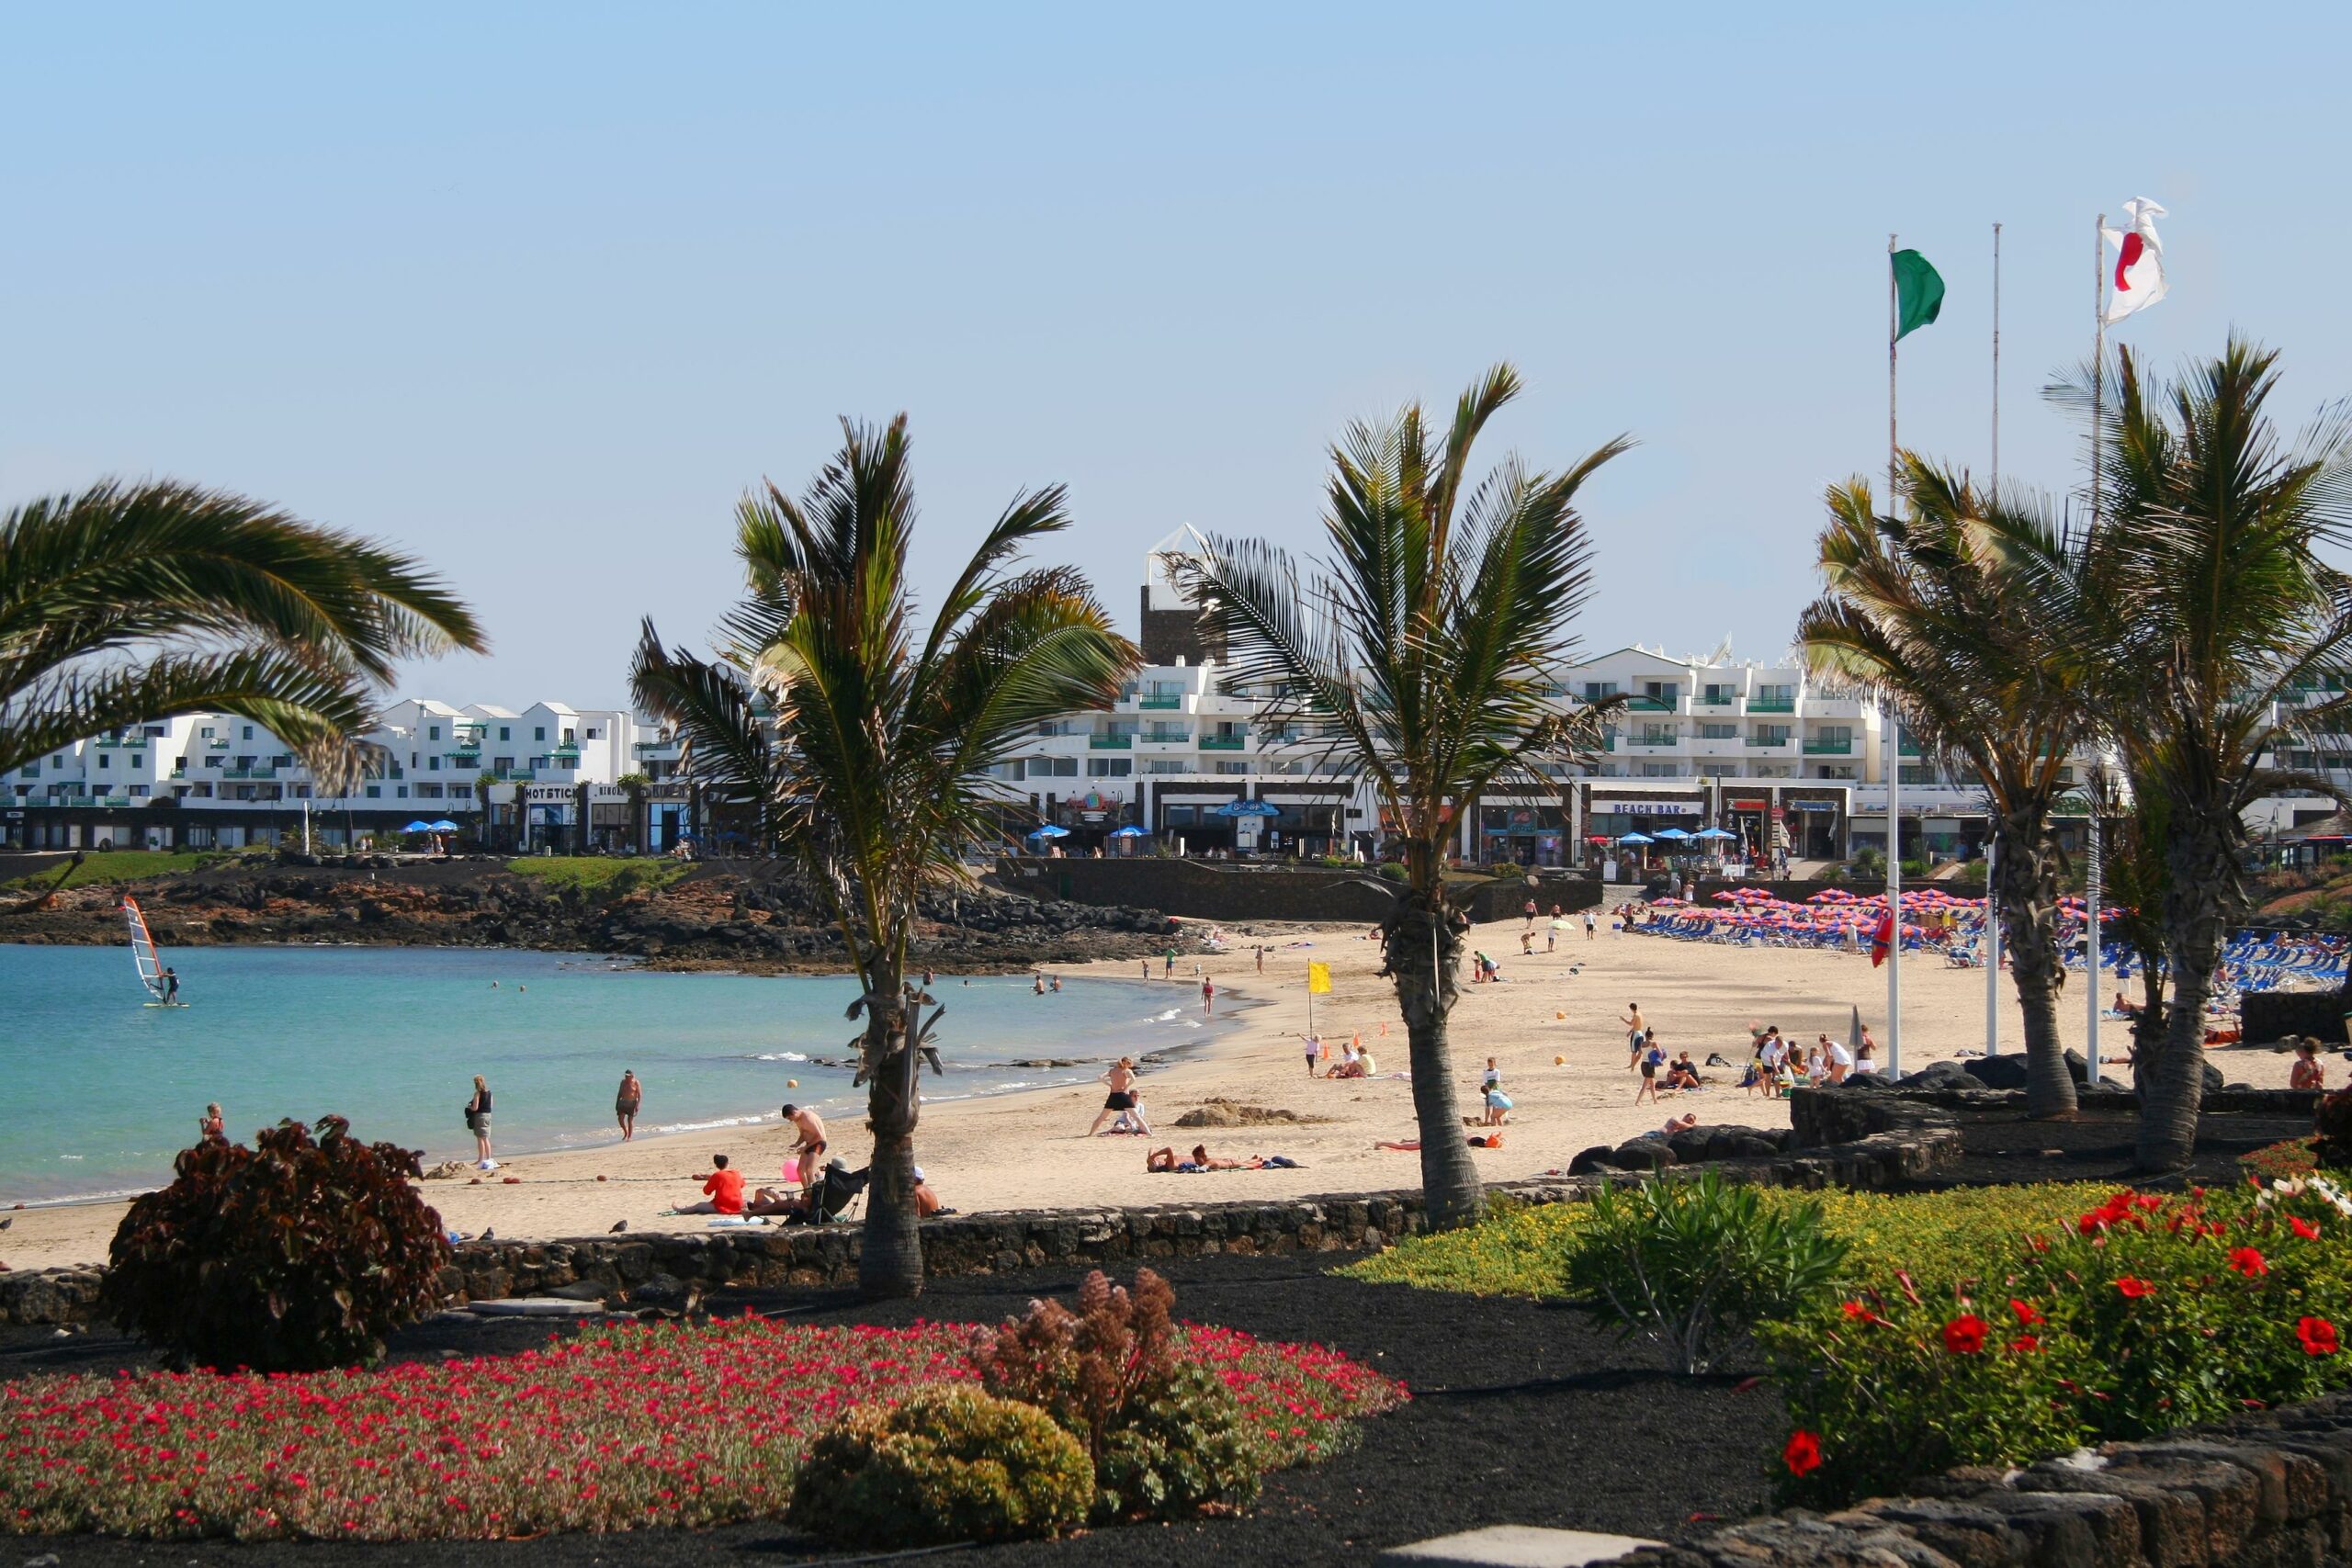 Lanzarote|Puerto del Carmen|Playa de las Cucharas, Costa Teguise, Lanzarote|Playa Flamingo, Lanzarote|Playa Caleton Blanco, Lanzarote|Playa de Famara, Lanzarote